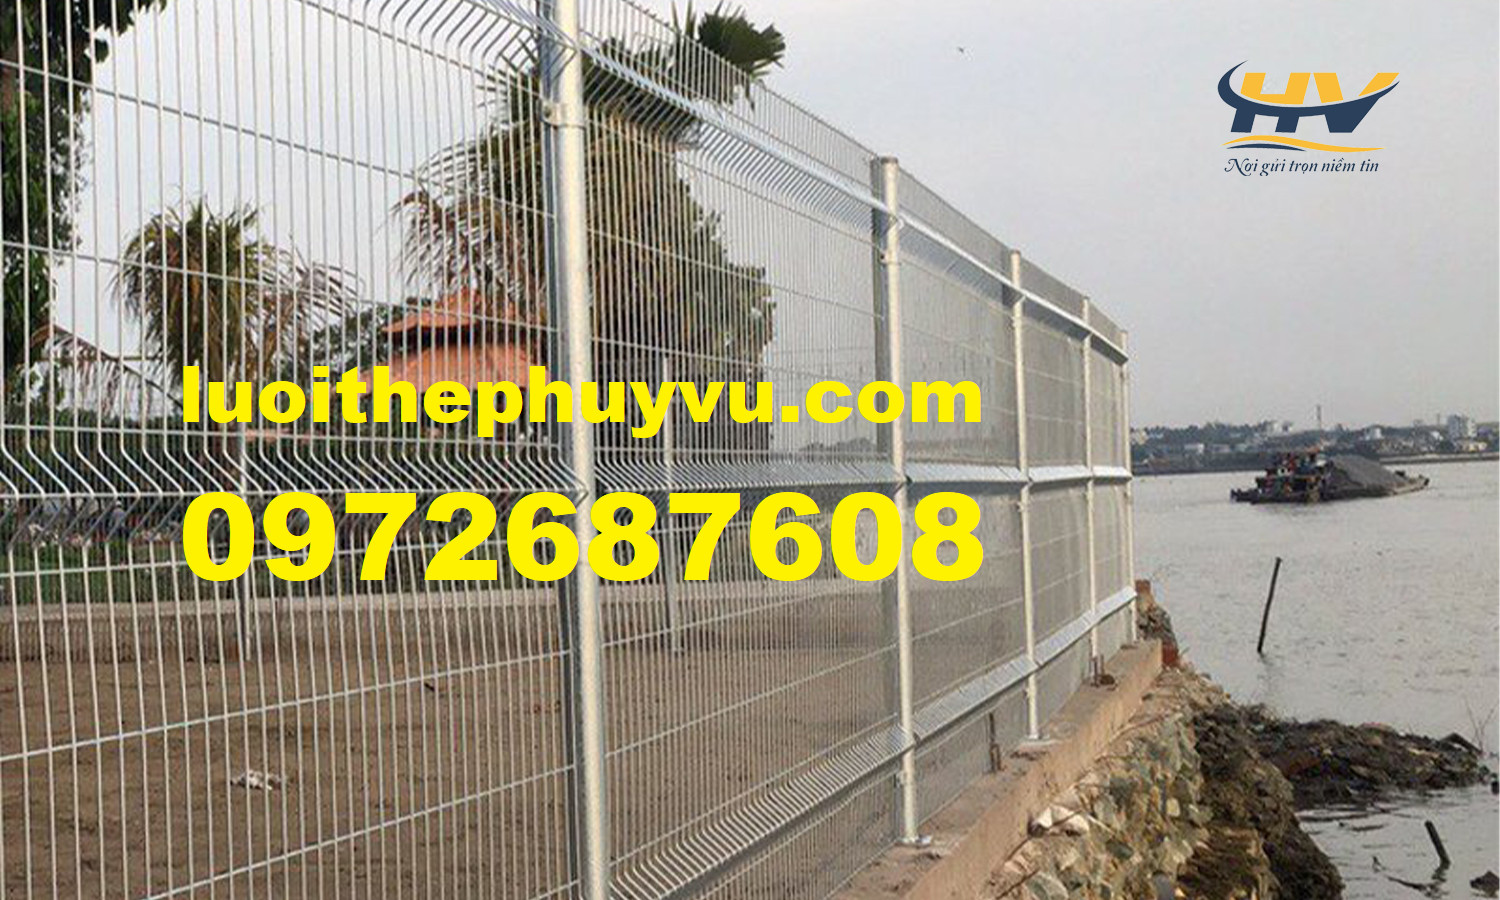 Hàng rào mạ kẽm, hàng rào chấn sóng, lưới hàng rào tại Tây Ninh